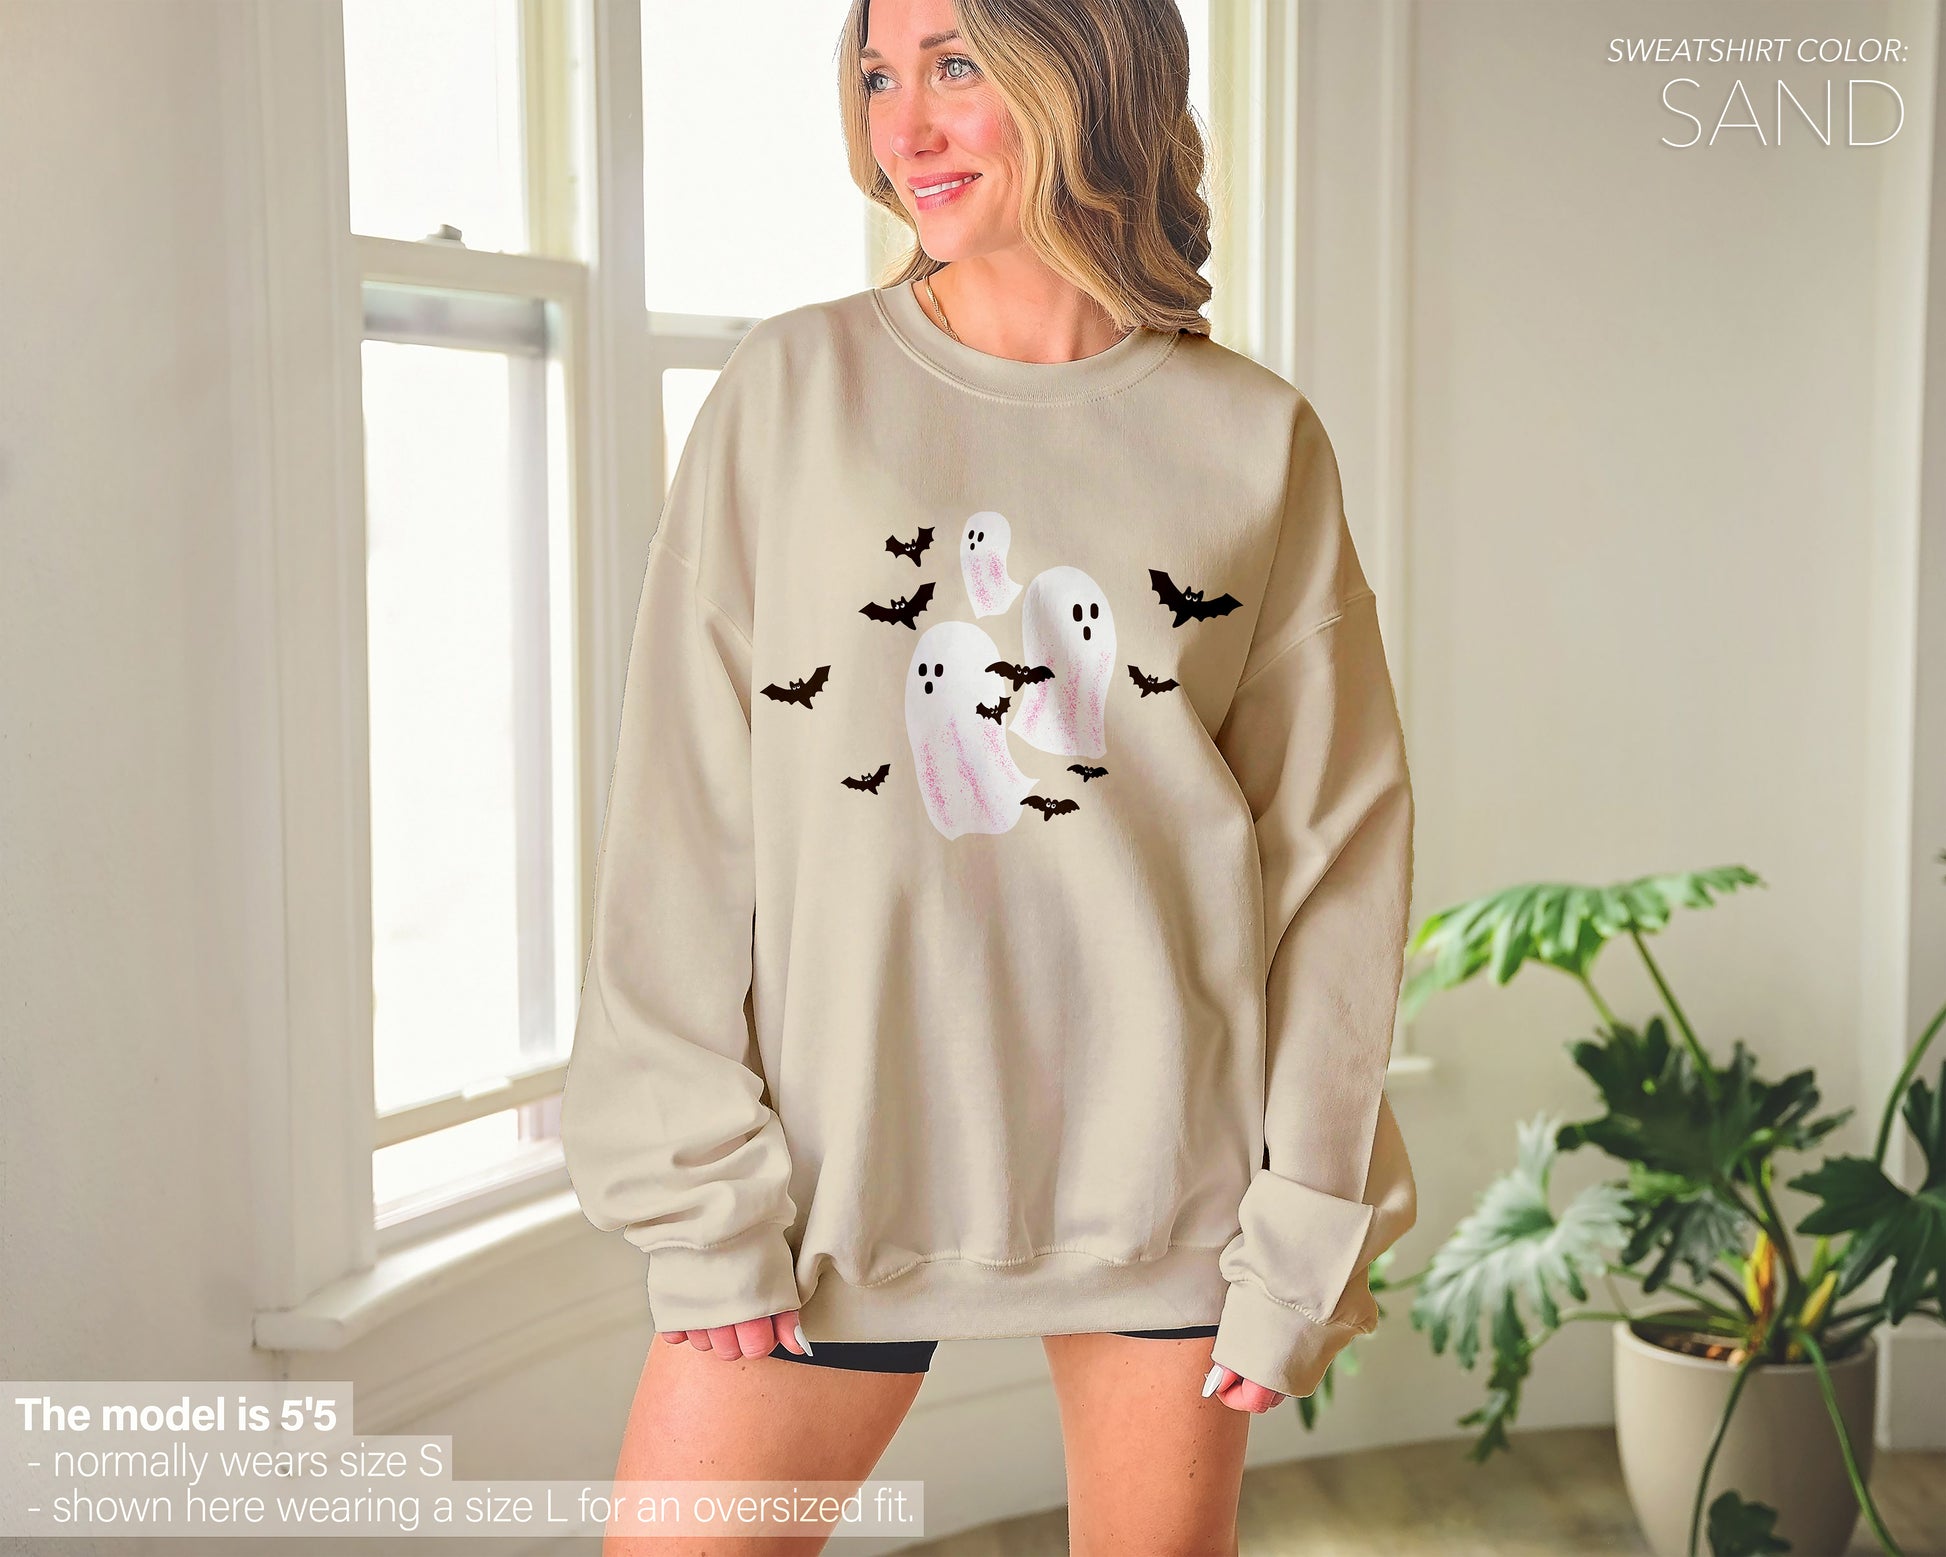 Ghost Bats Spooky Halloween Sweatshirt (Crewneck/Hoodie) - funravel